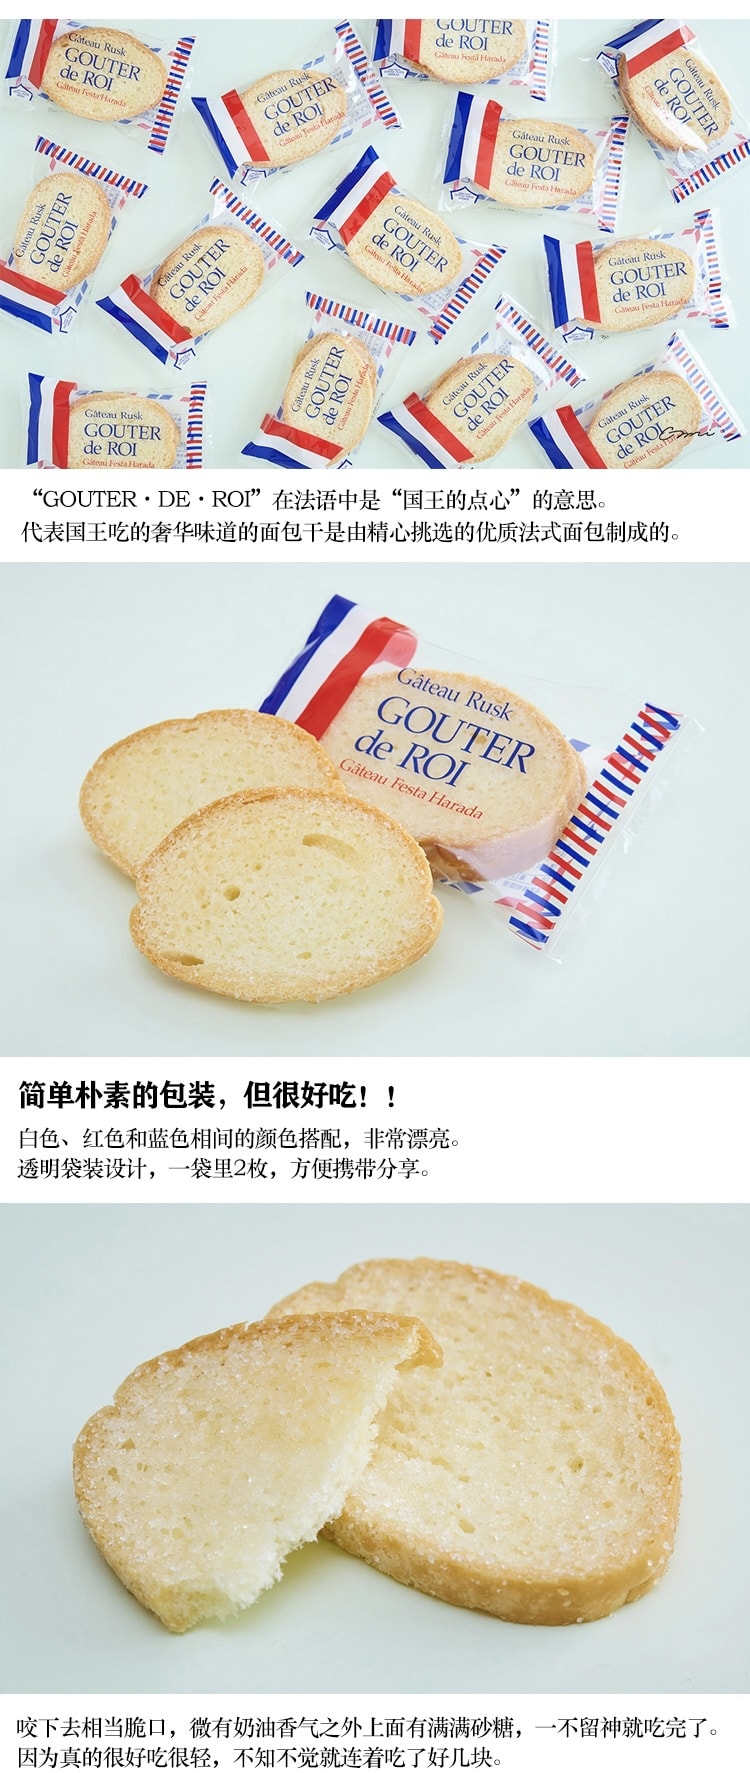 【日本直效郵件】GATEAU FESTA HARADA 法國 奶油烤麵包片 原味 26枚裝